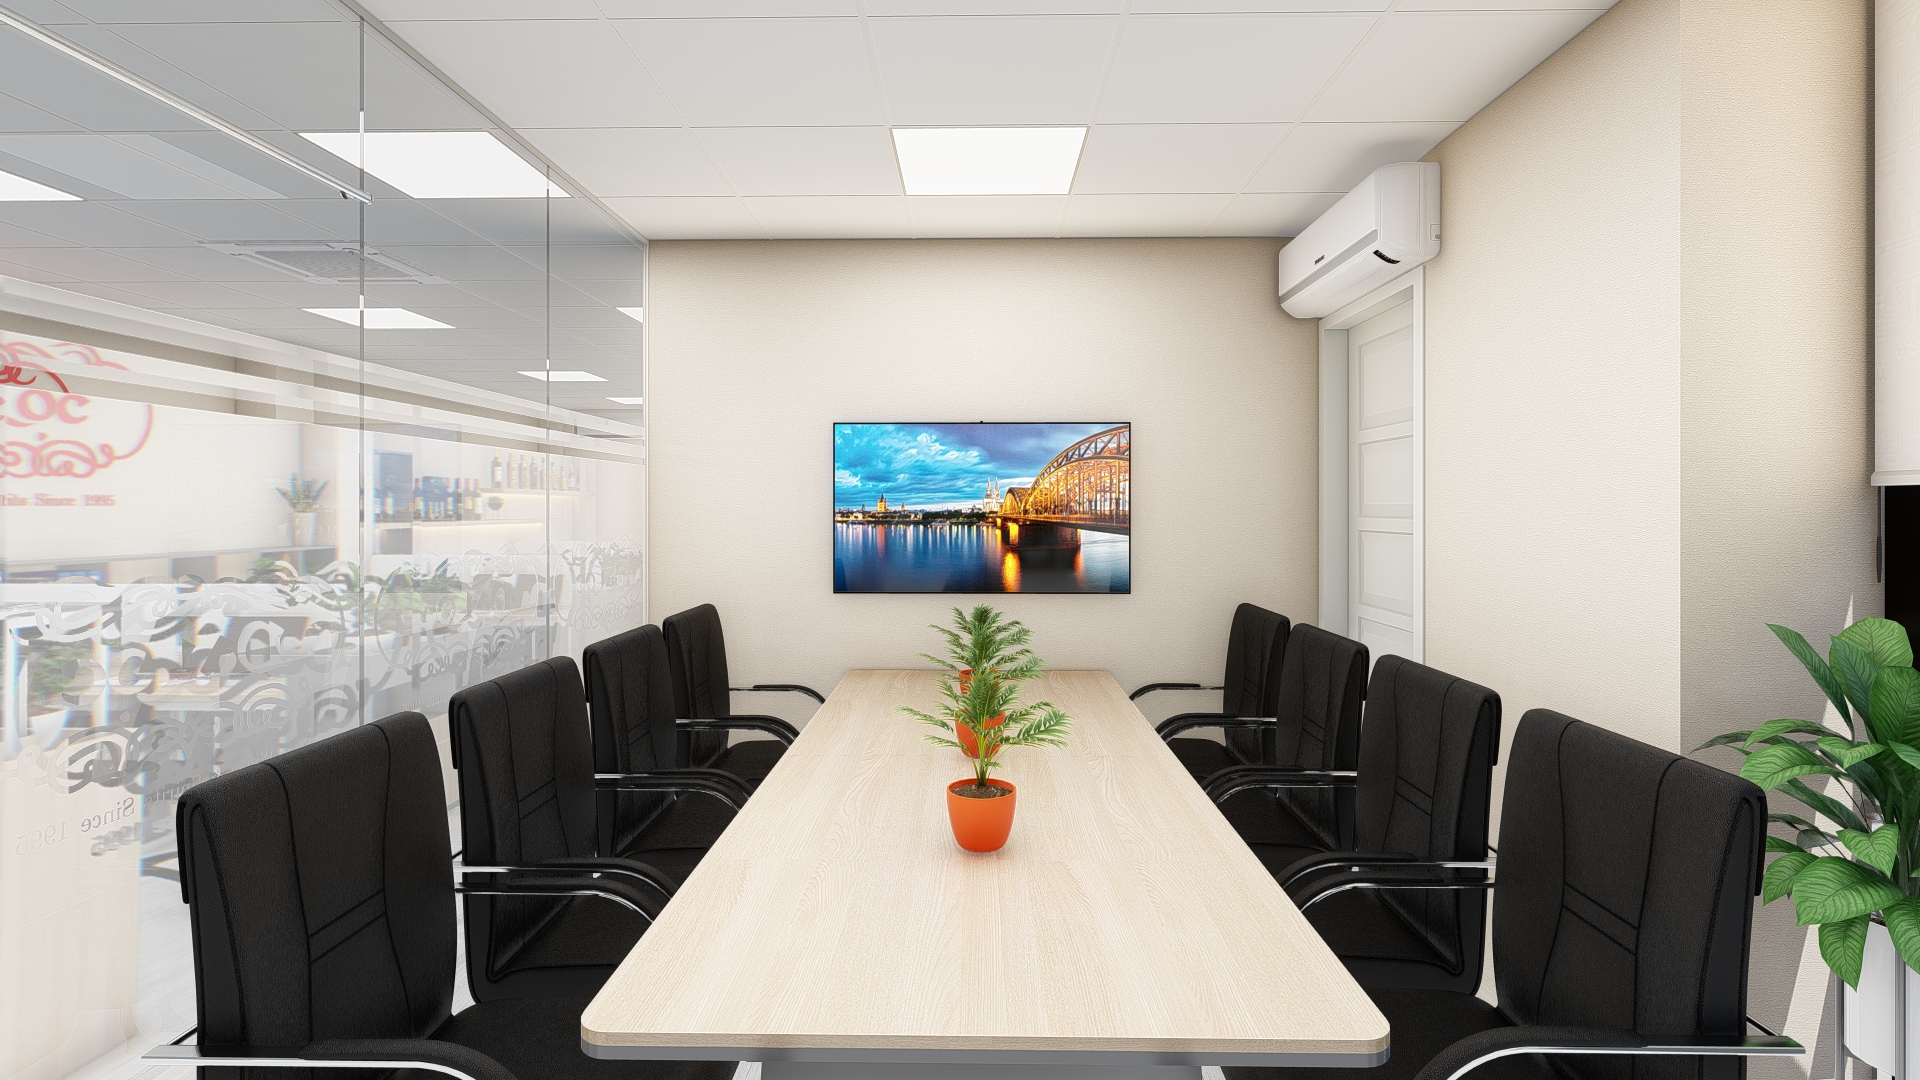 Phòng họp nhỏ thường là địa điểm diễn ra các cuộc họp nhóm, hay các cuộc họp kín, nội bộ để đảm bảo thông tin giữa các cá nhân trong nhóm, hoặc giữa những người có cùng chức vụ, cùng vị trí